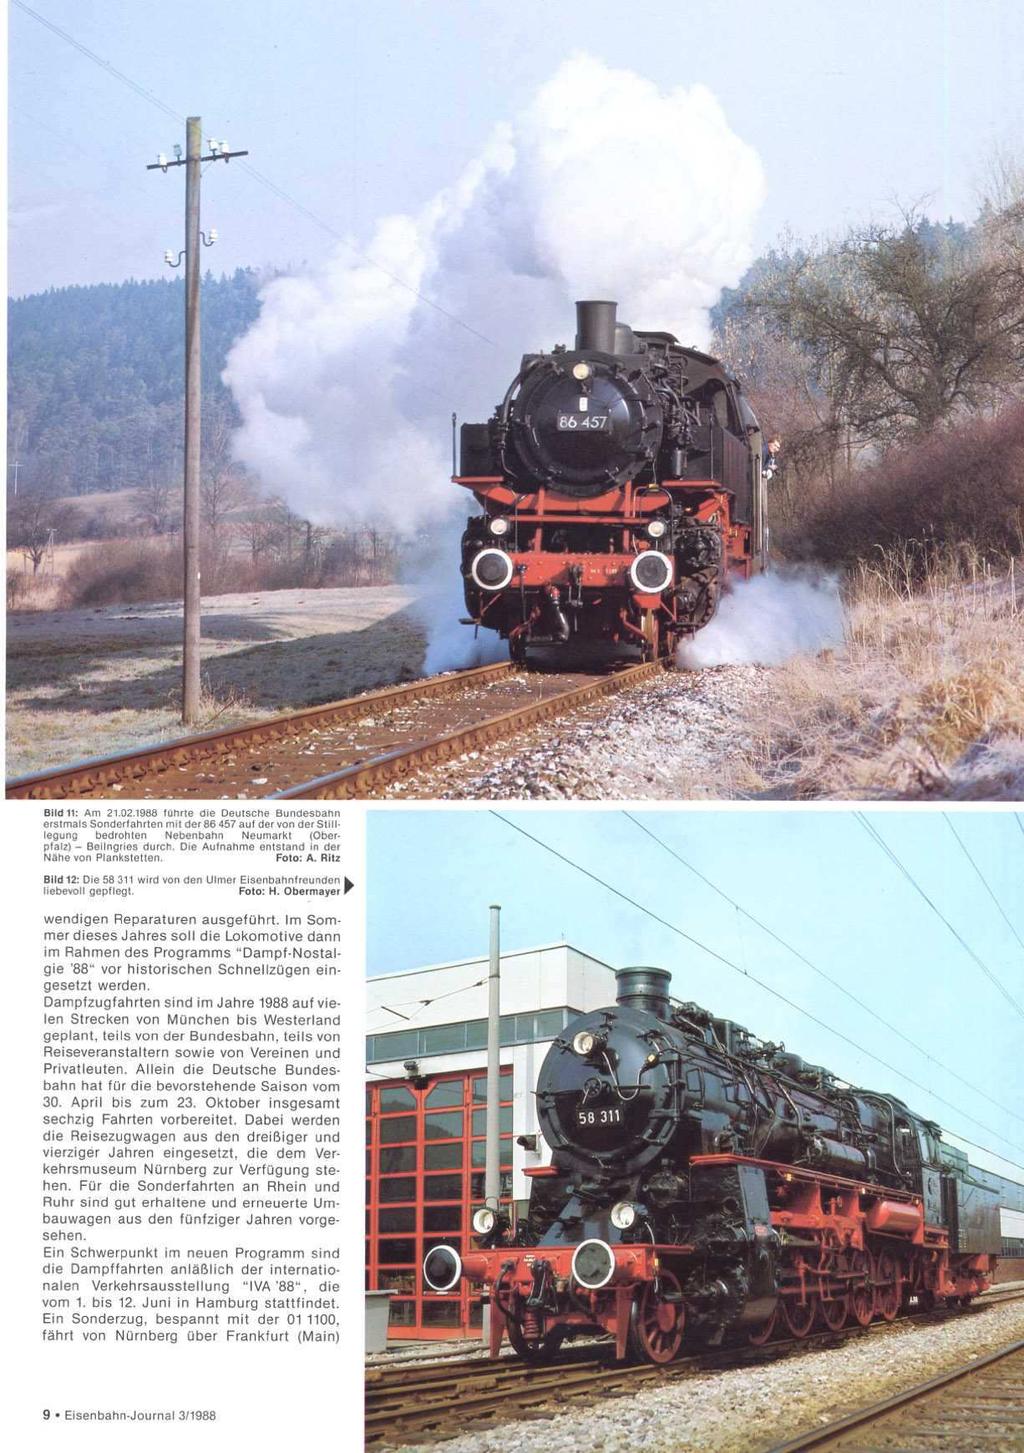 Bildii: Am 21.02.1988 führte die Deutsche Bundesbahn erstmals Sonderfahrten mit der 86 457 auf der von der StillL legung bedrohten Nebenbahn Neumarkt (Oberpfalz) - Beilngries durch.